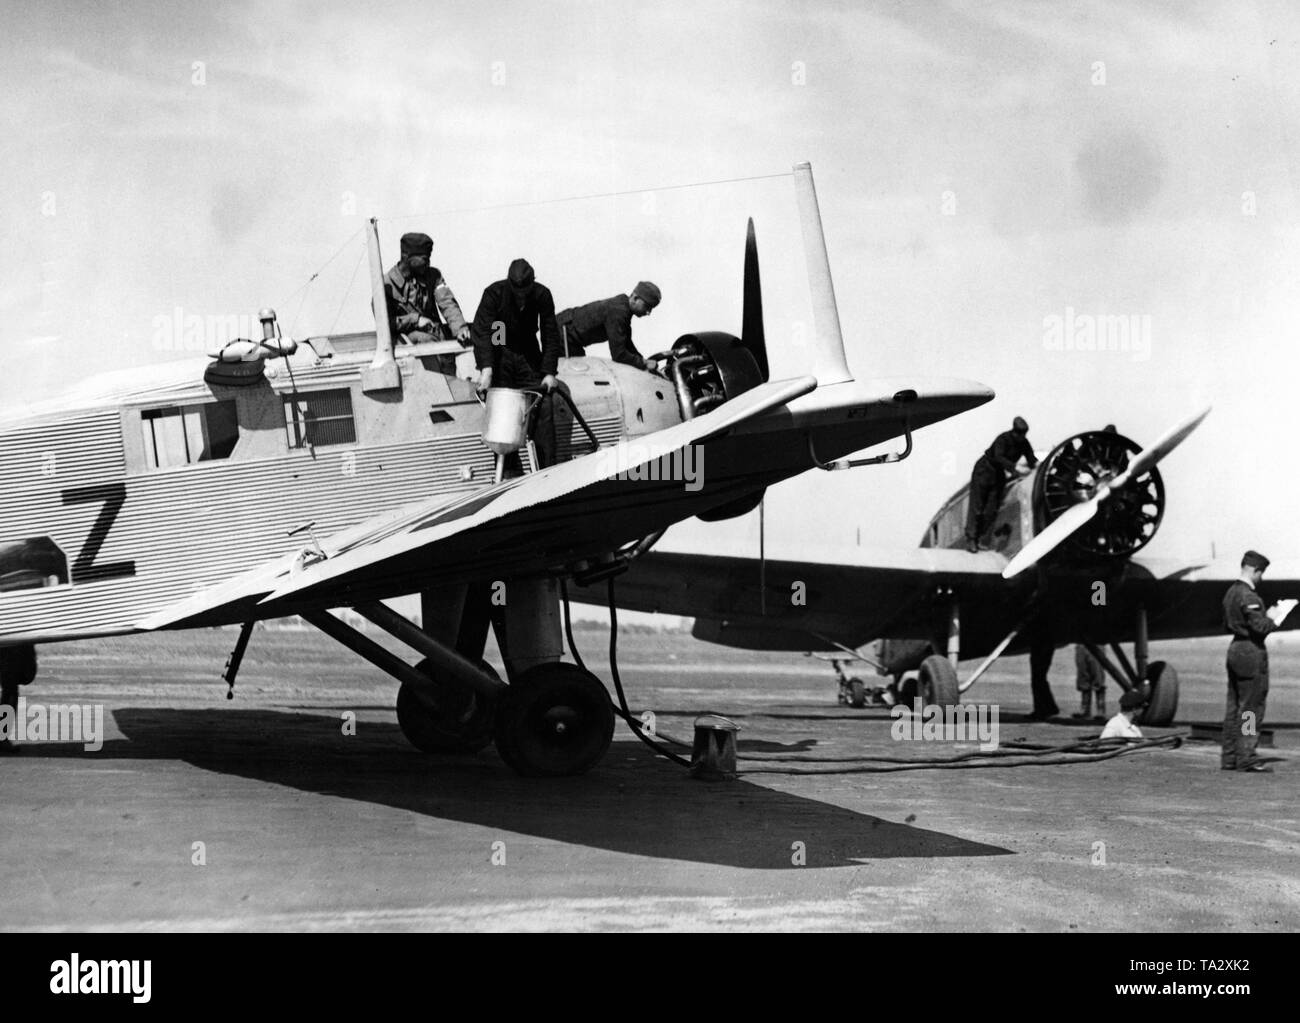 Student Piloten und Bodenpersonal der Luftwaffe während der Betankung einer Junkers W34, dieses Flugzeug Typ wurde häufig durch die Luftwaffe als Schule engine verwendet. Stockfoto